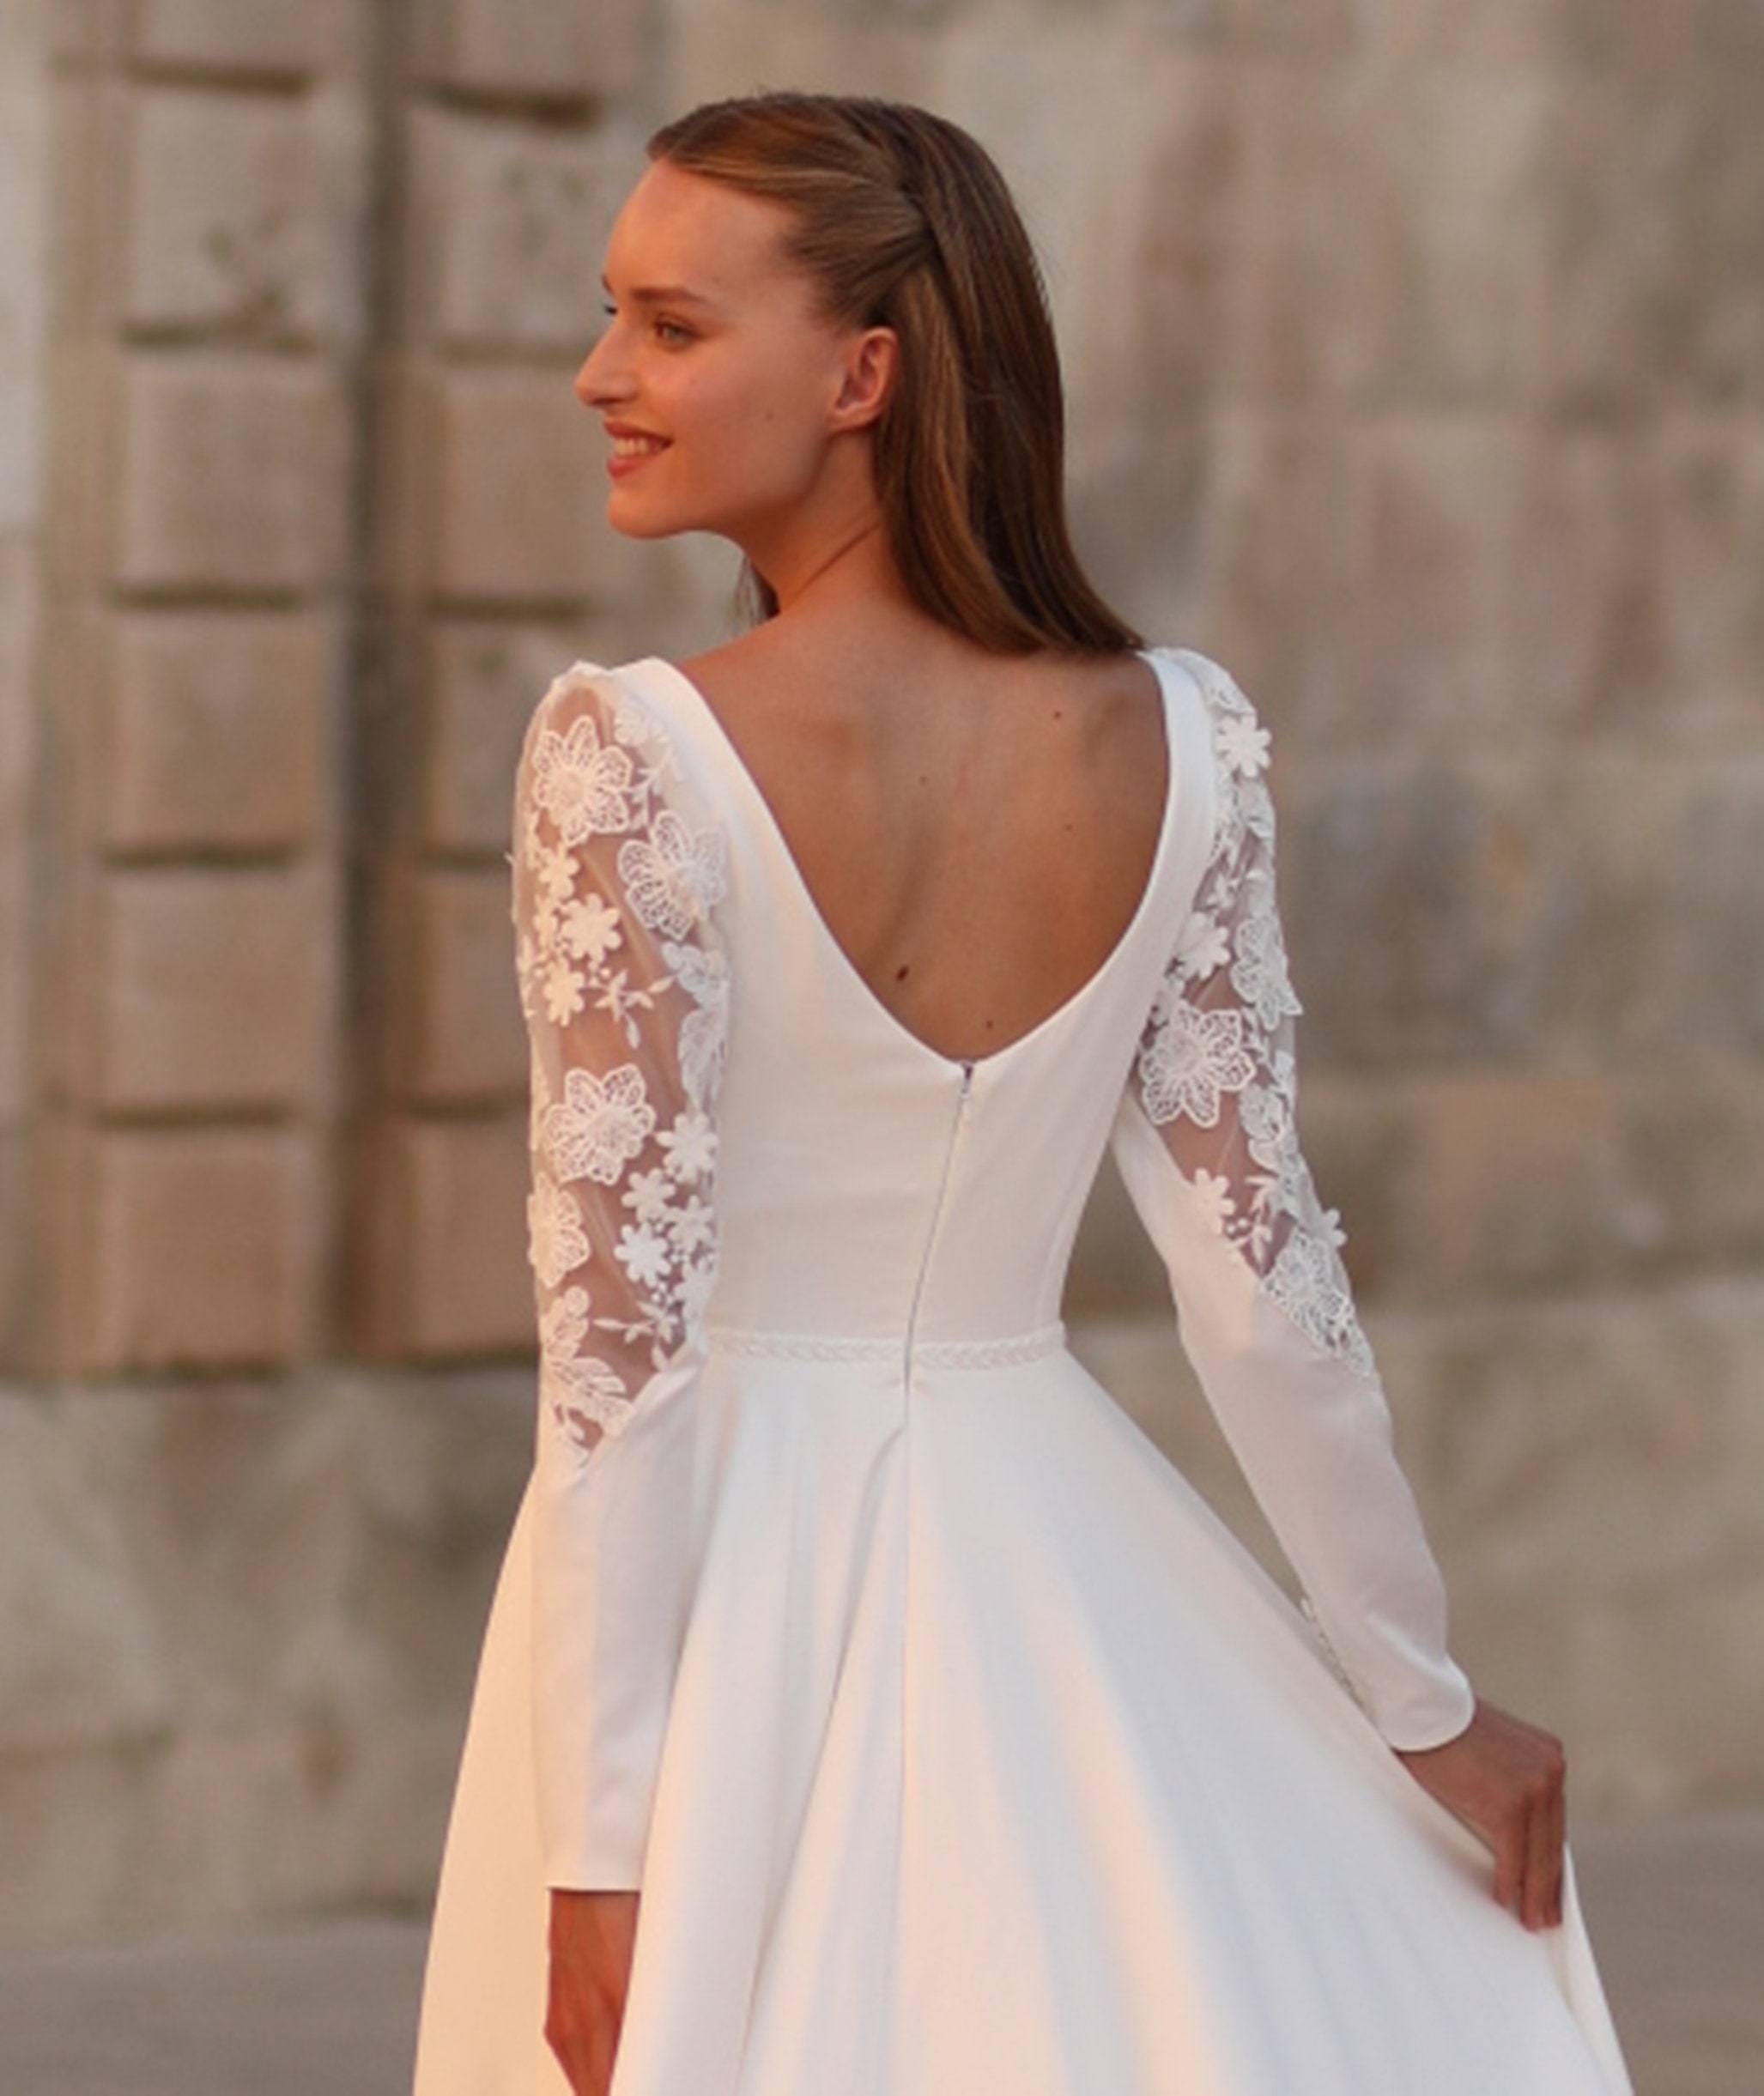 Long Sleeve Modest Wedding Dress, A Line Rustic Wedding Dress